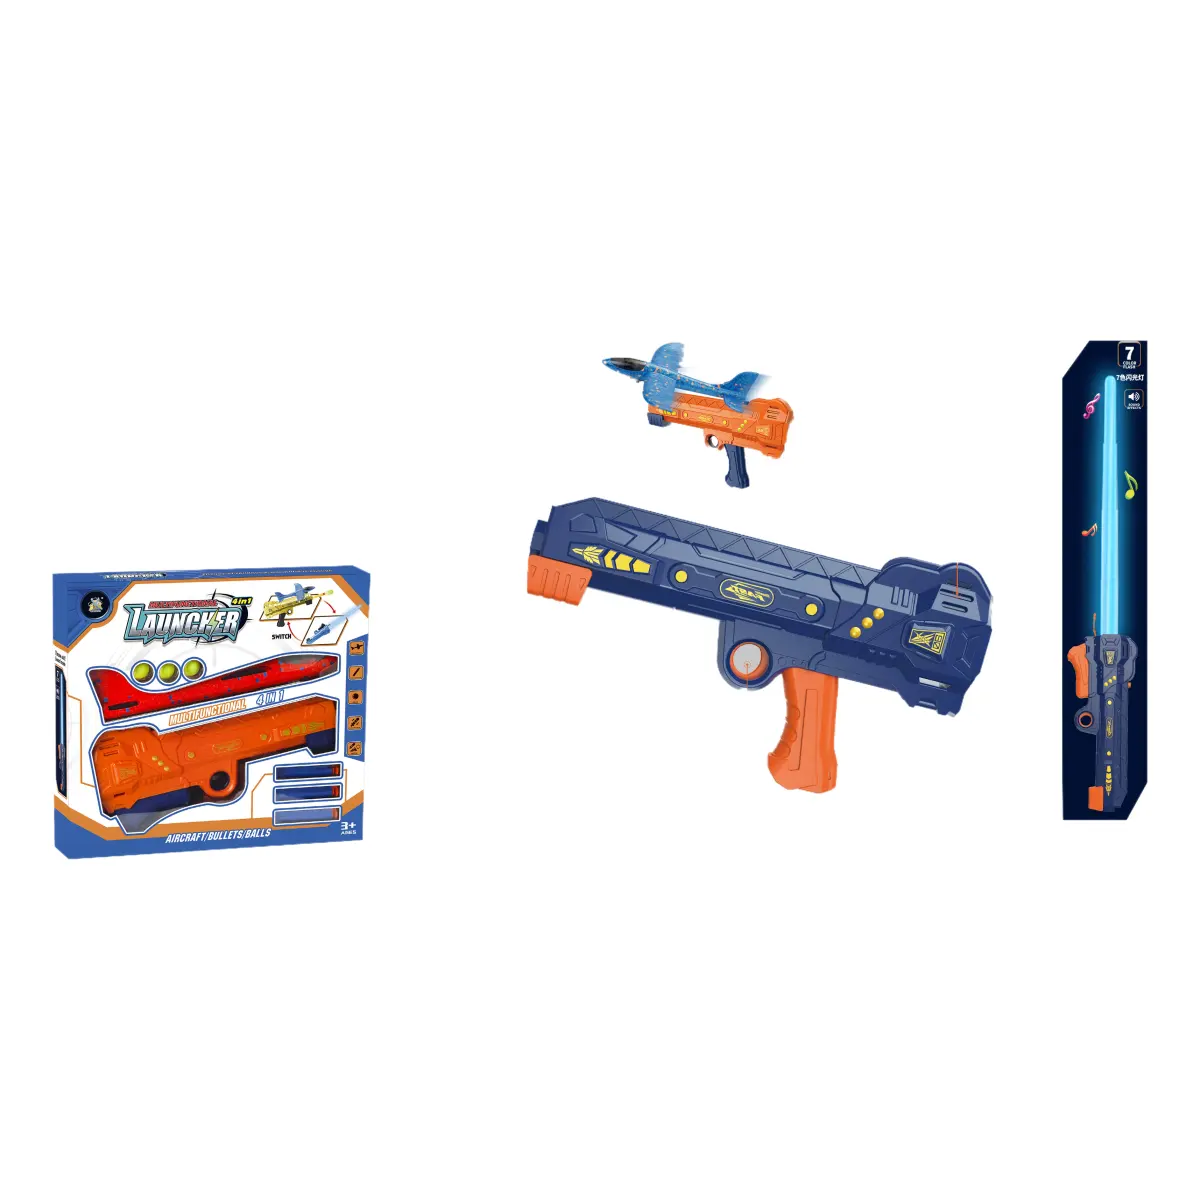 4-in-1 Battle Blasterขยายดาบโฟมลูกดอกปิงปองลูกไฟสีฟ้าสีส้มรุ่นปืนของเล่น